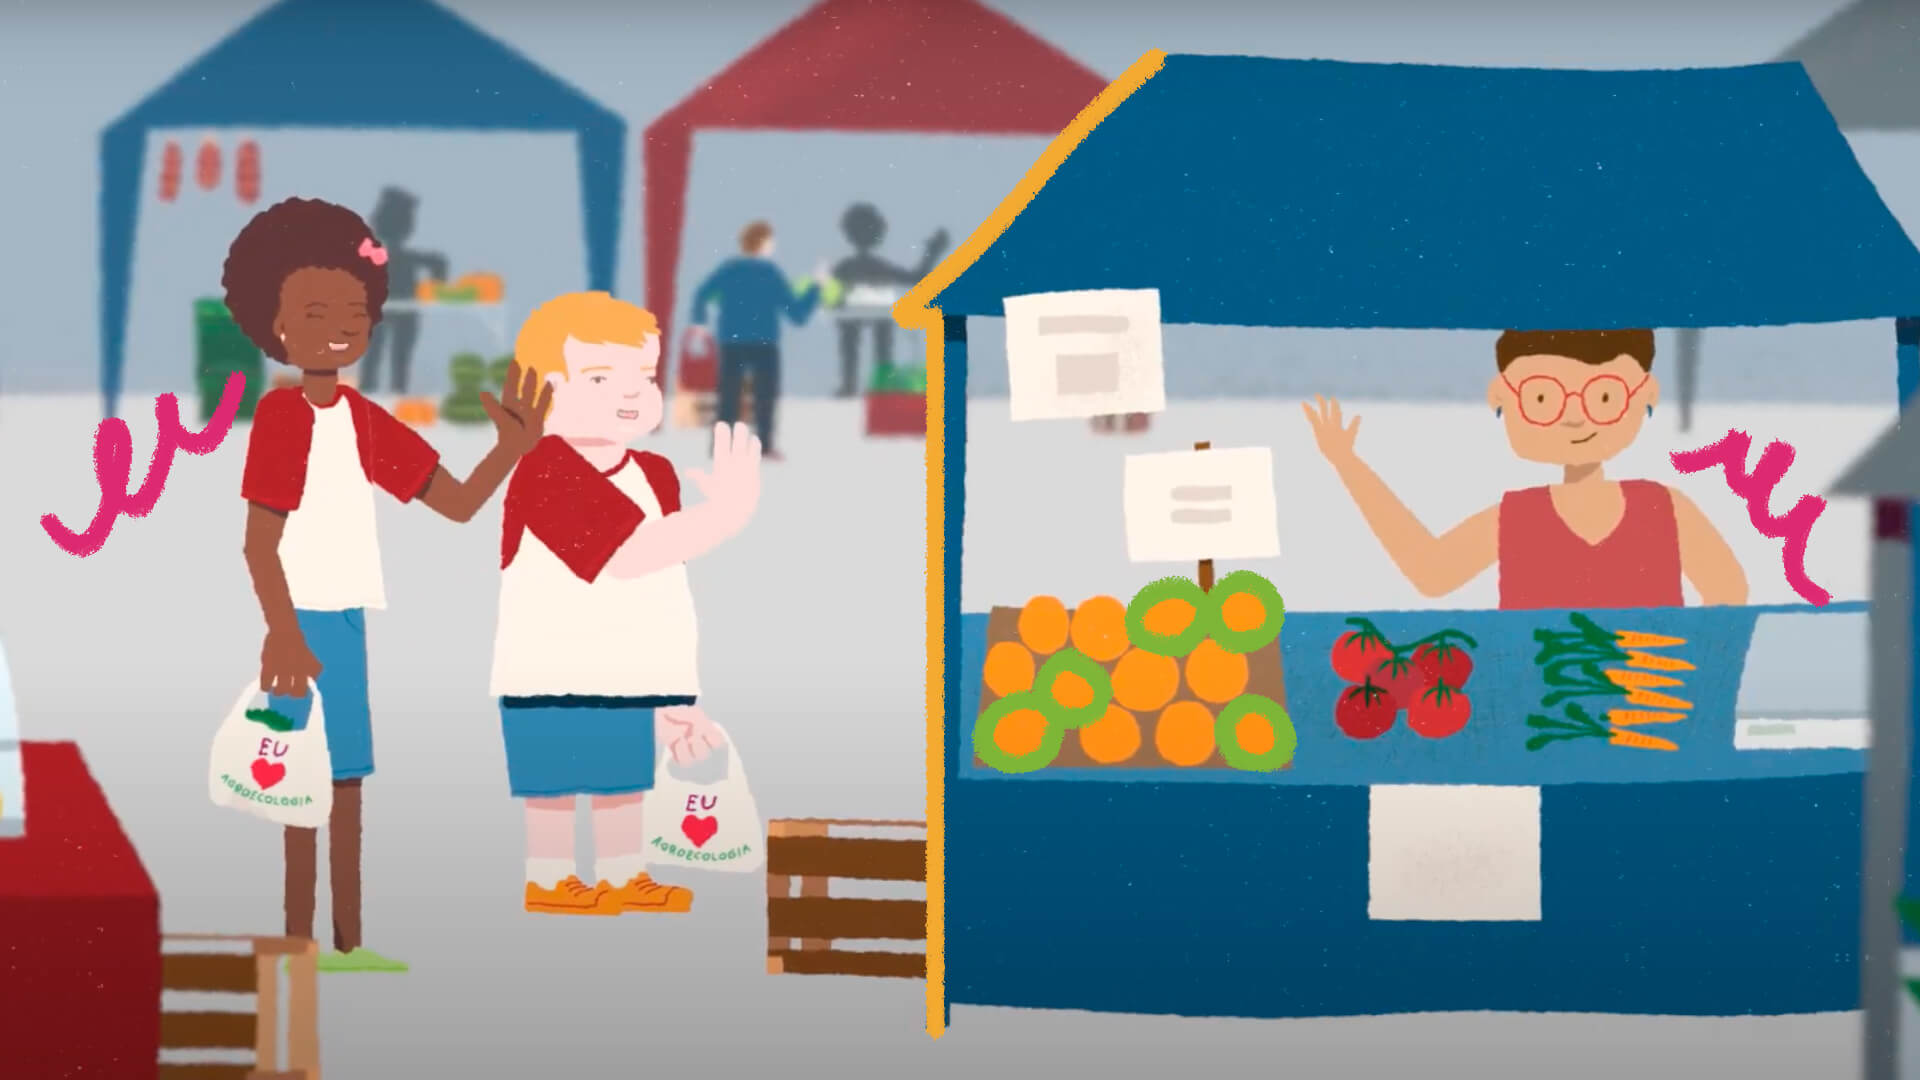 Alimentação saudável para crianças: ilustração de duas crianças, uma menina negra e um menino branco, cumprimentando uma feirante de pele bronzeada. Em sua banca possuem laranjas, tomates e cenouras.